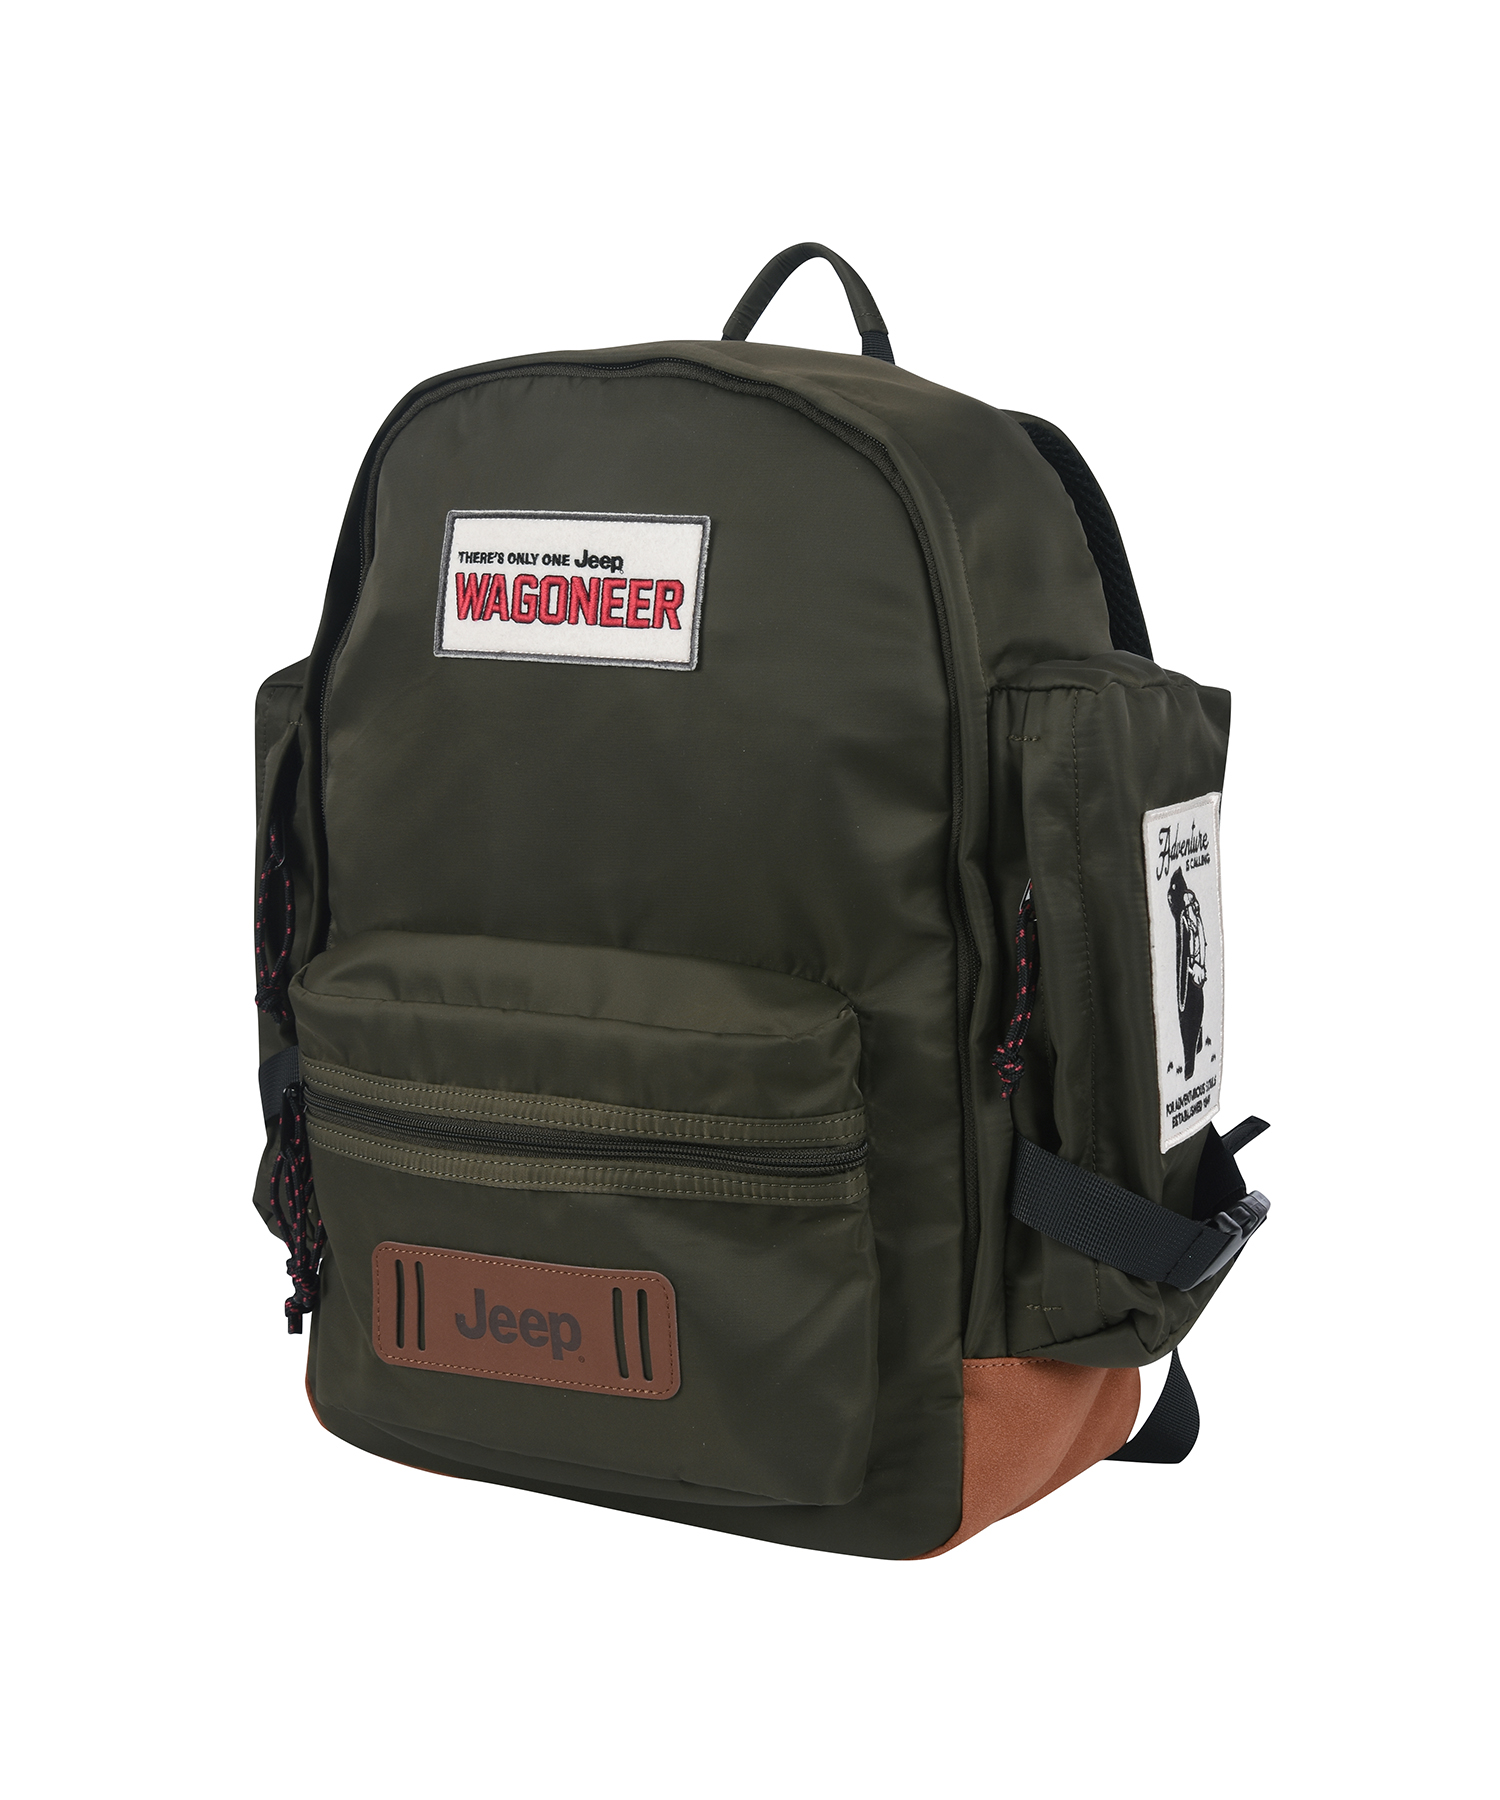 Wagoneer Backpack (JP0GAU052KH)